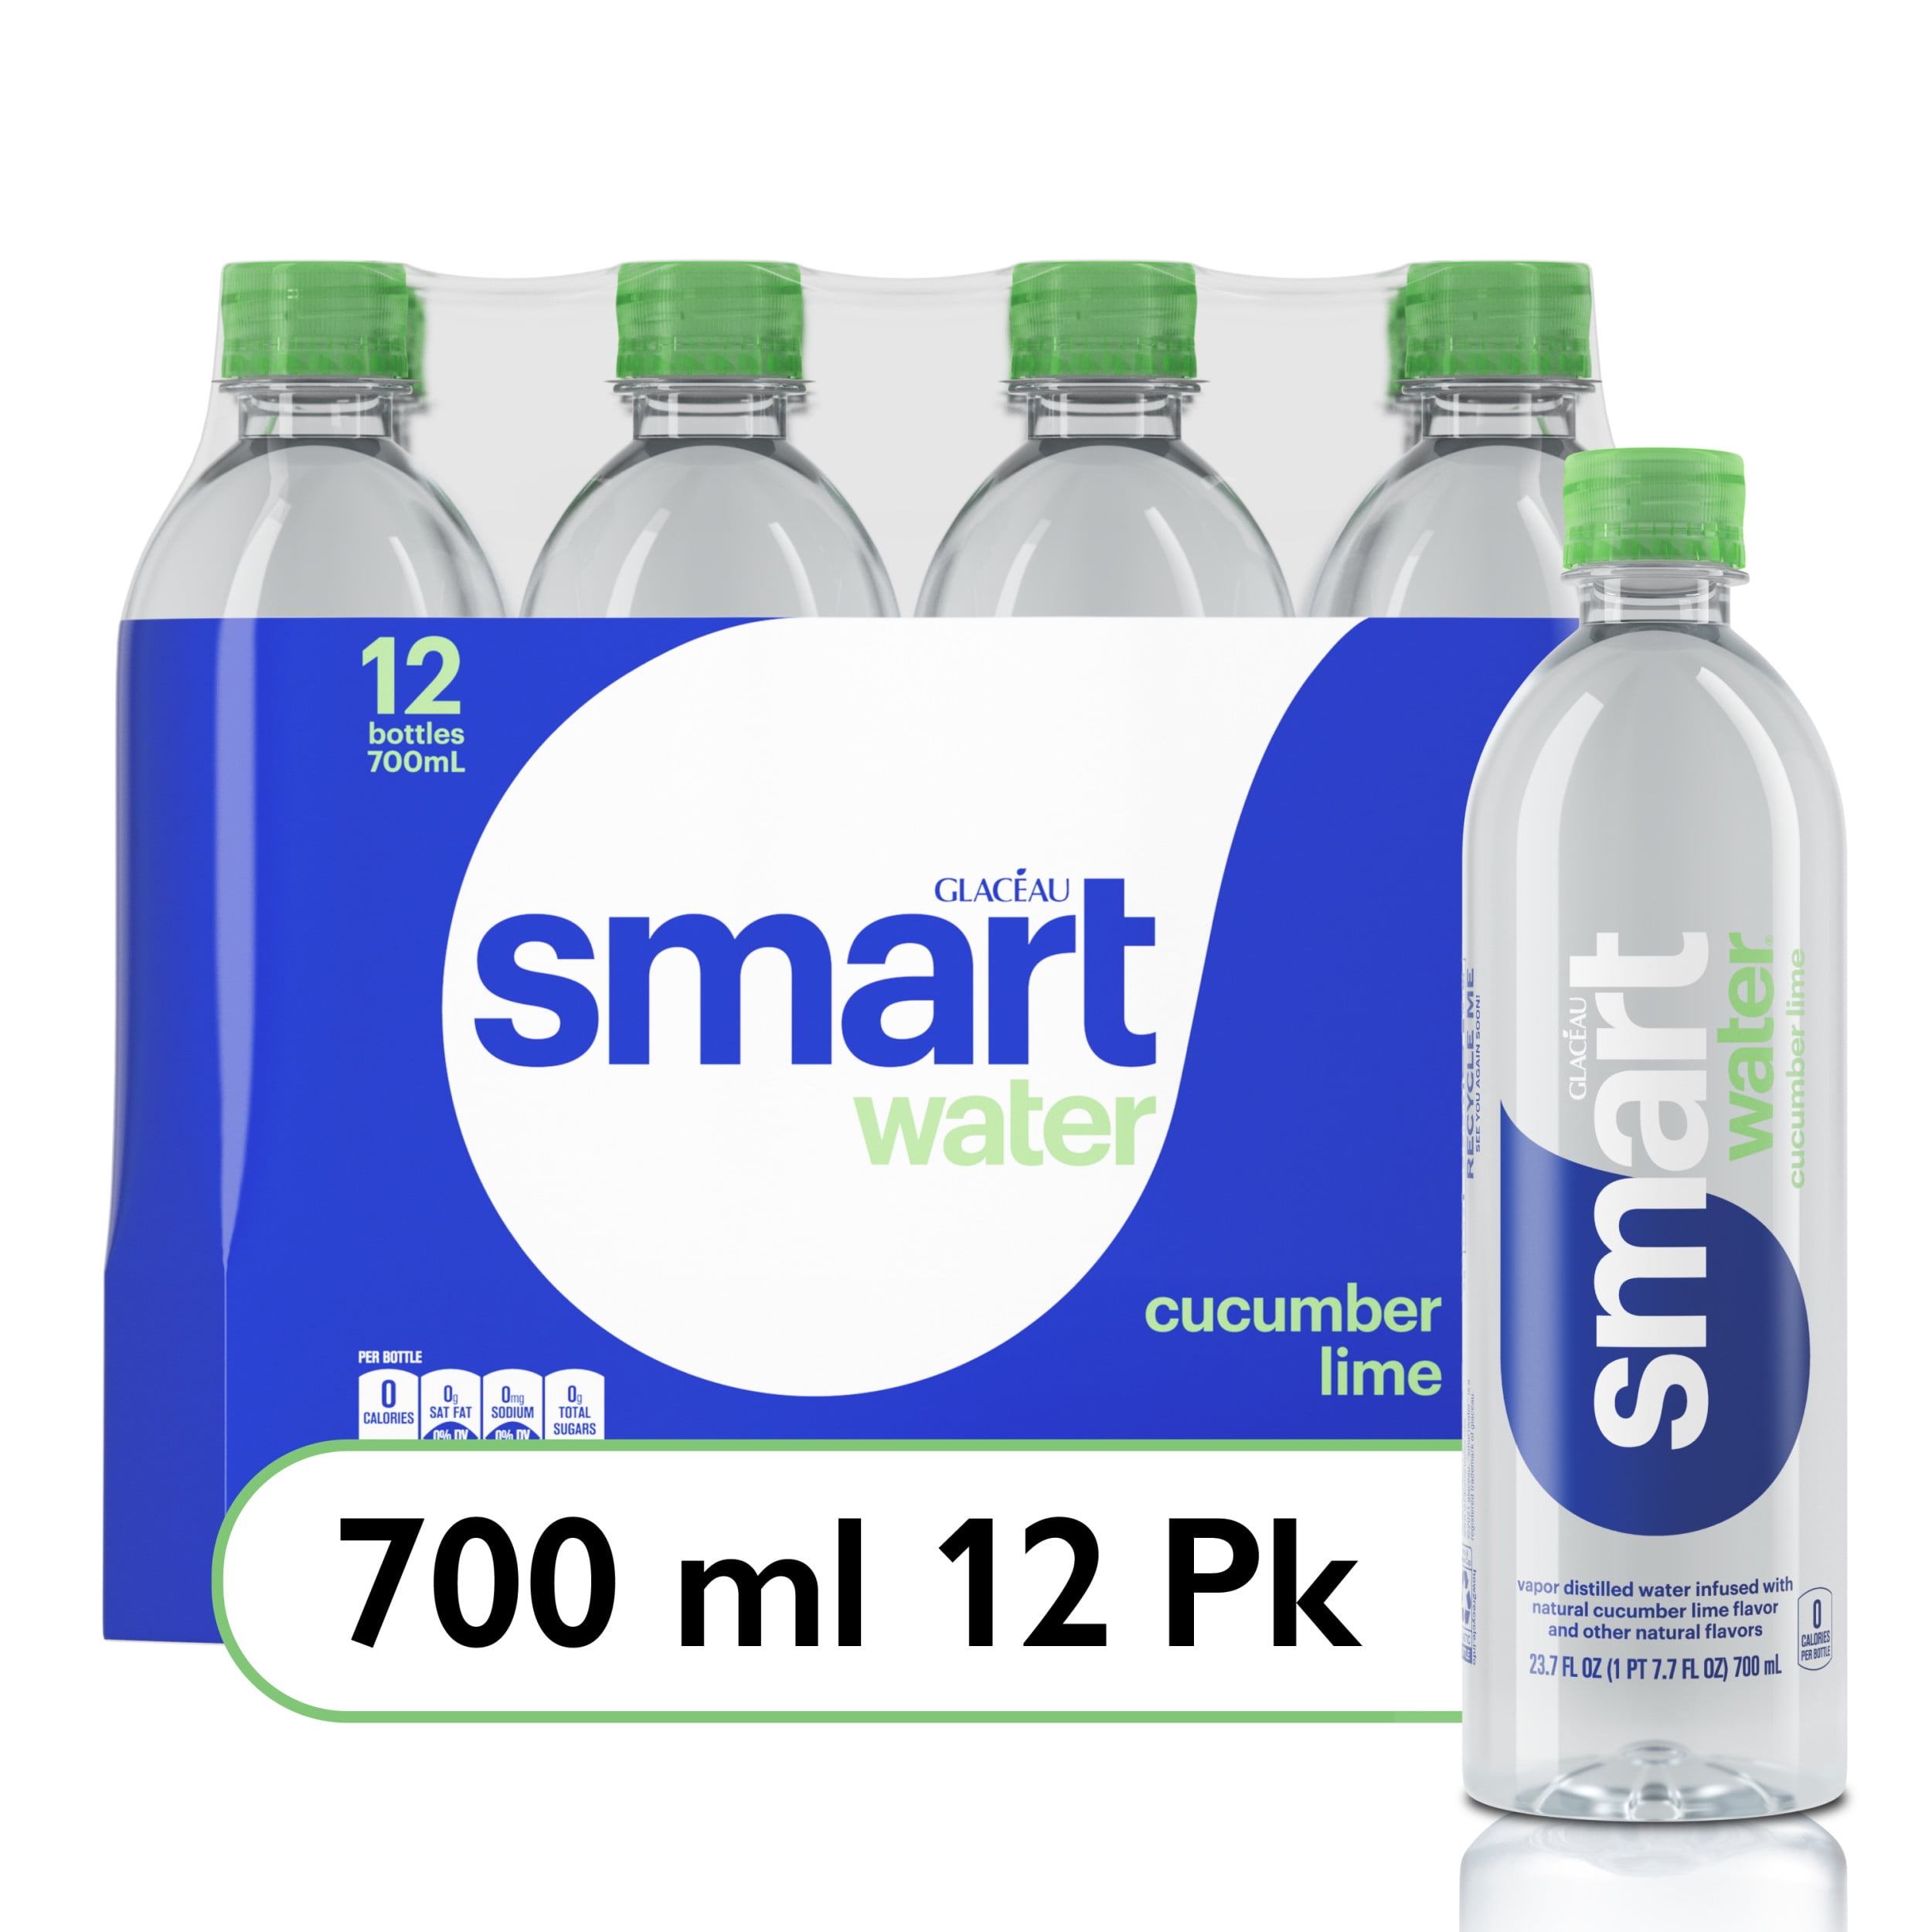 smartwater cucumber lime, vapor distilled premium bottled water, 23.7 fl oz, 6 Pack